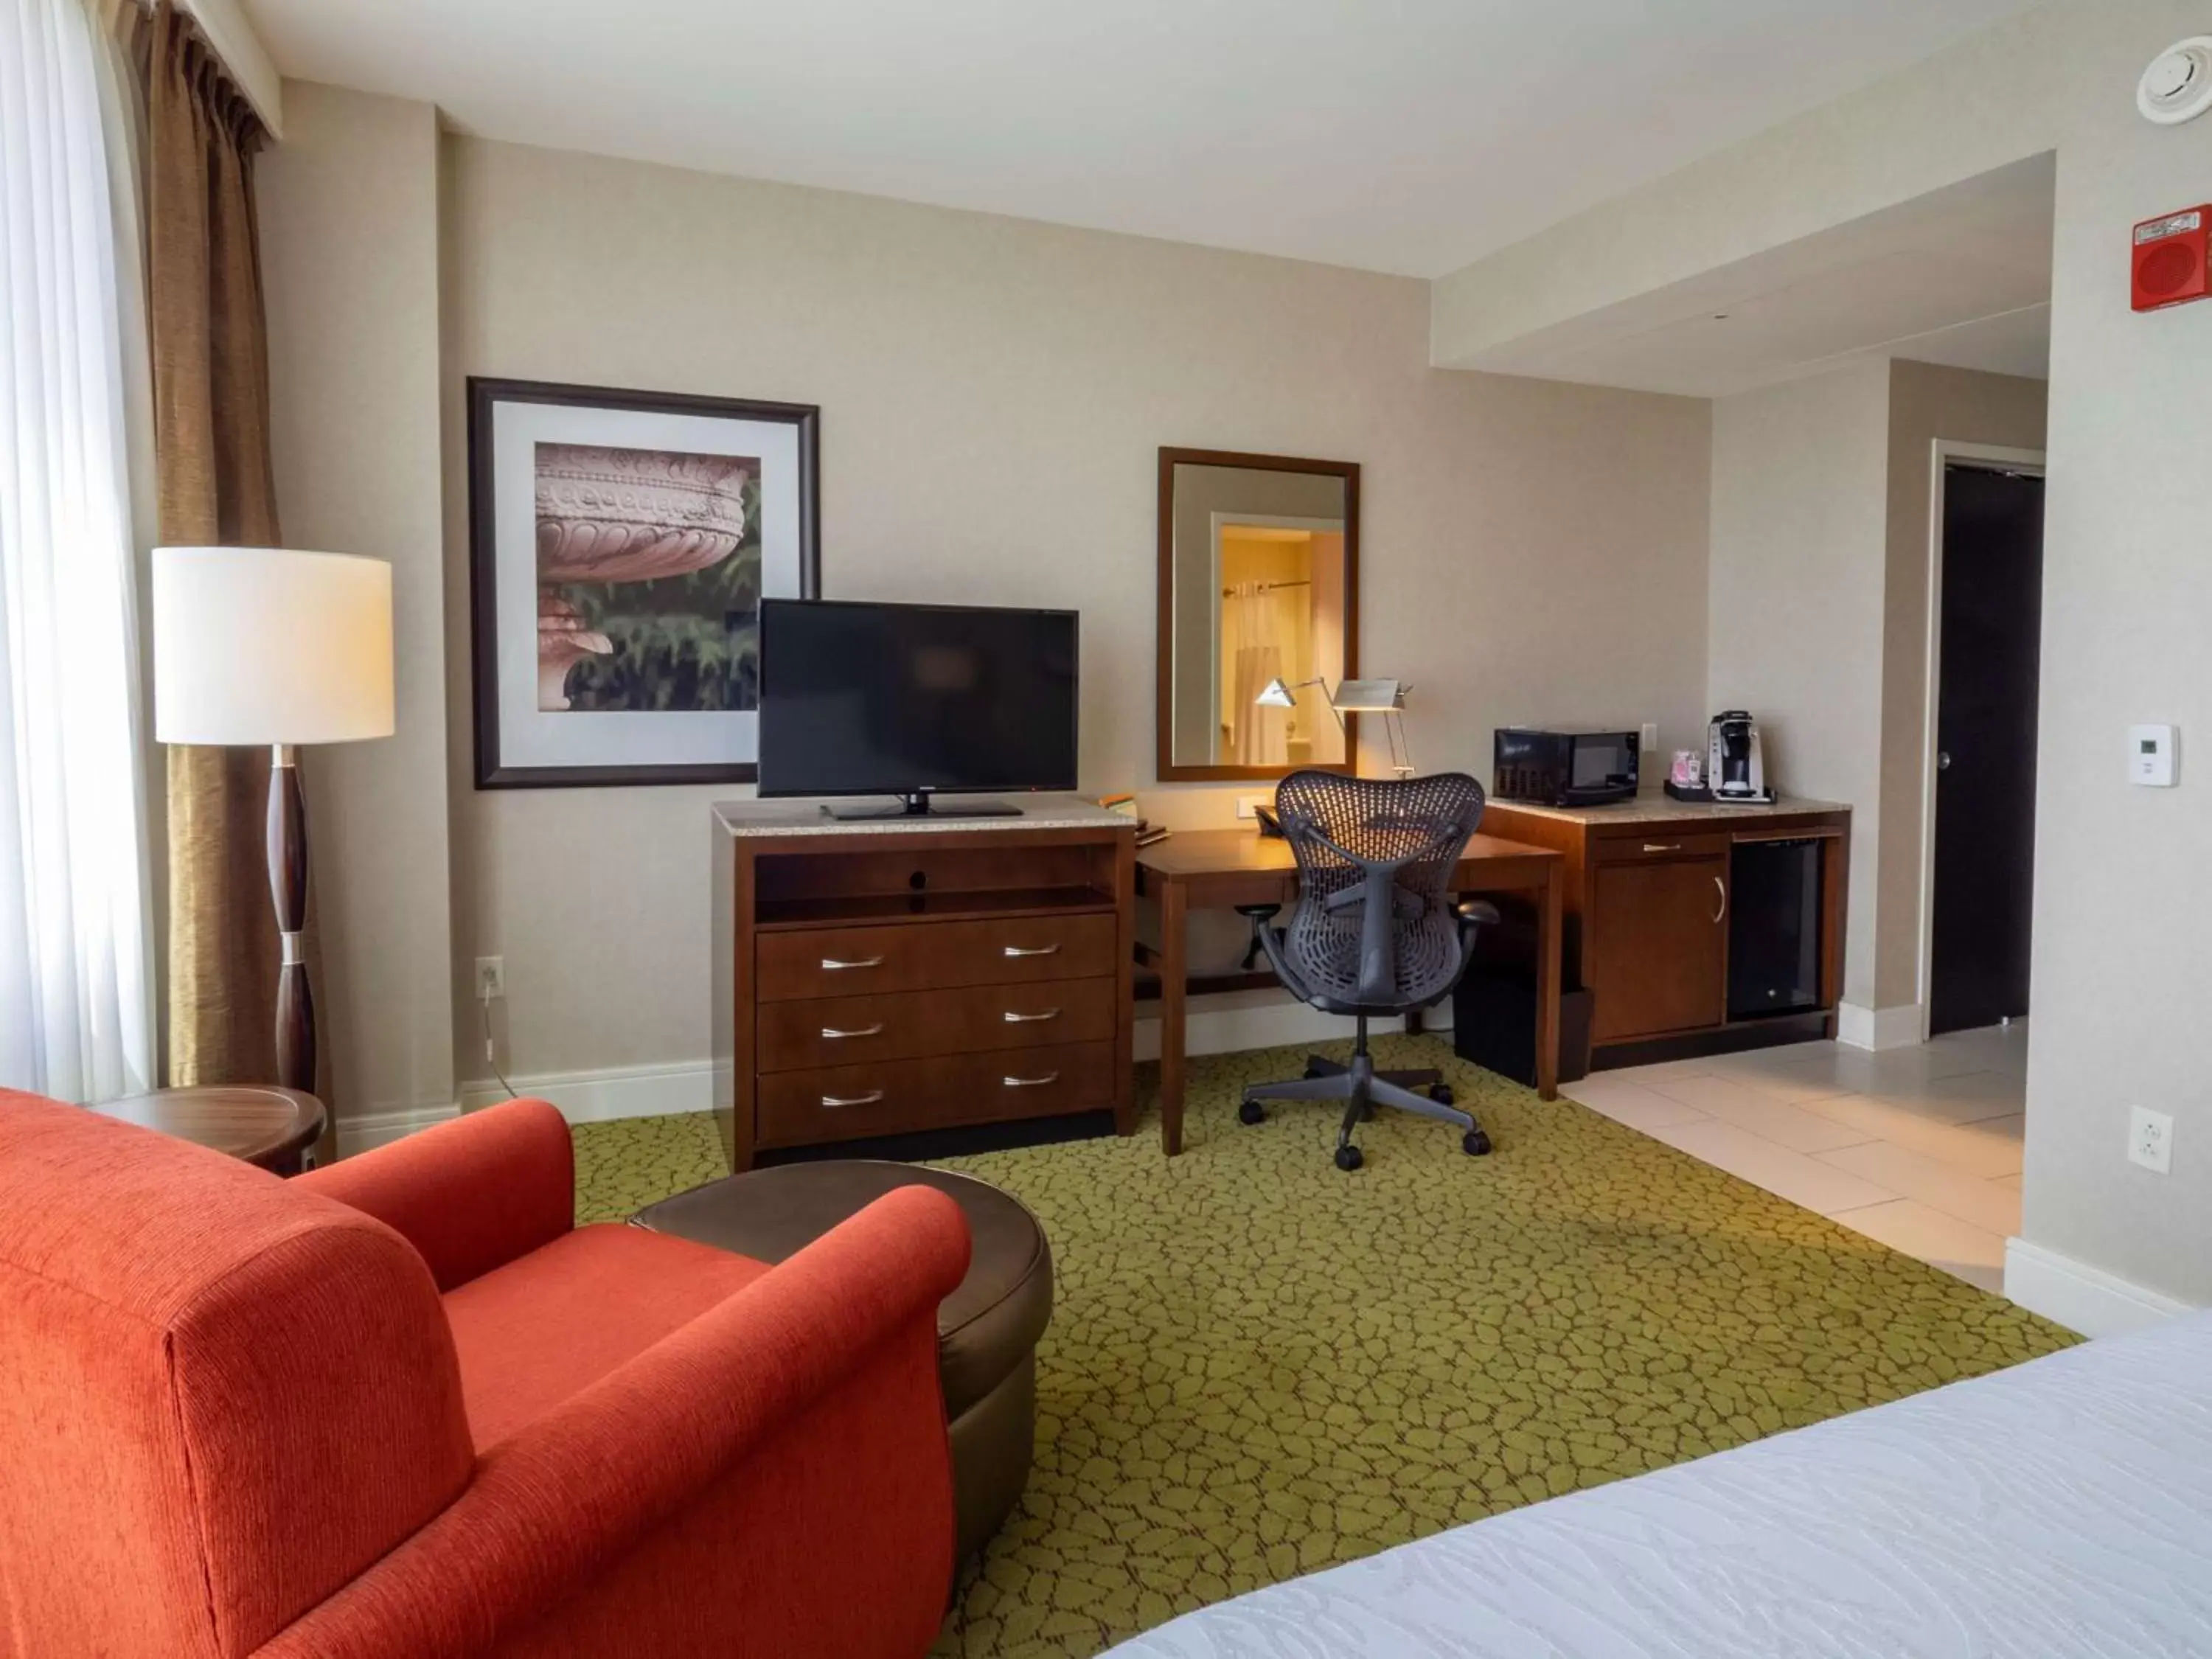 Bedroom, TV/Entertainment Center in The Hilton Garden Inn Buffalo-Downtown